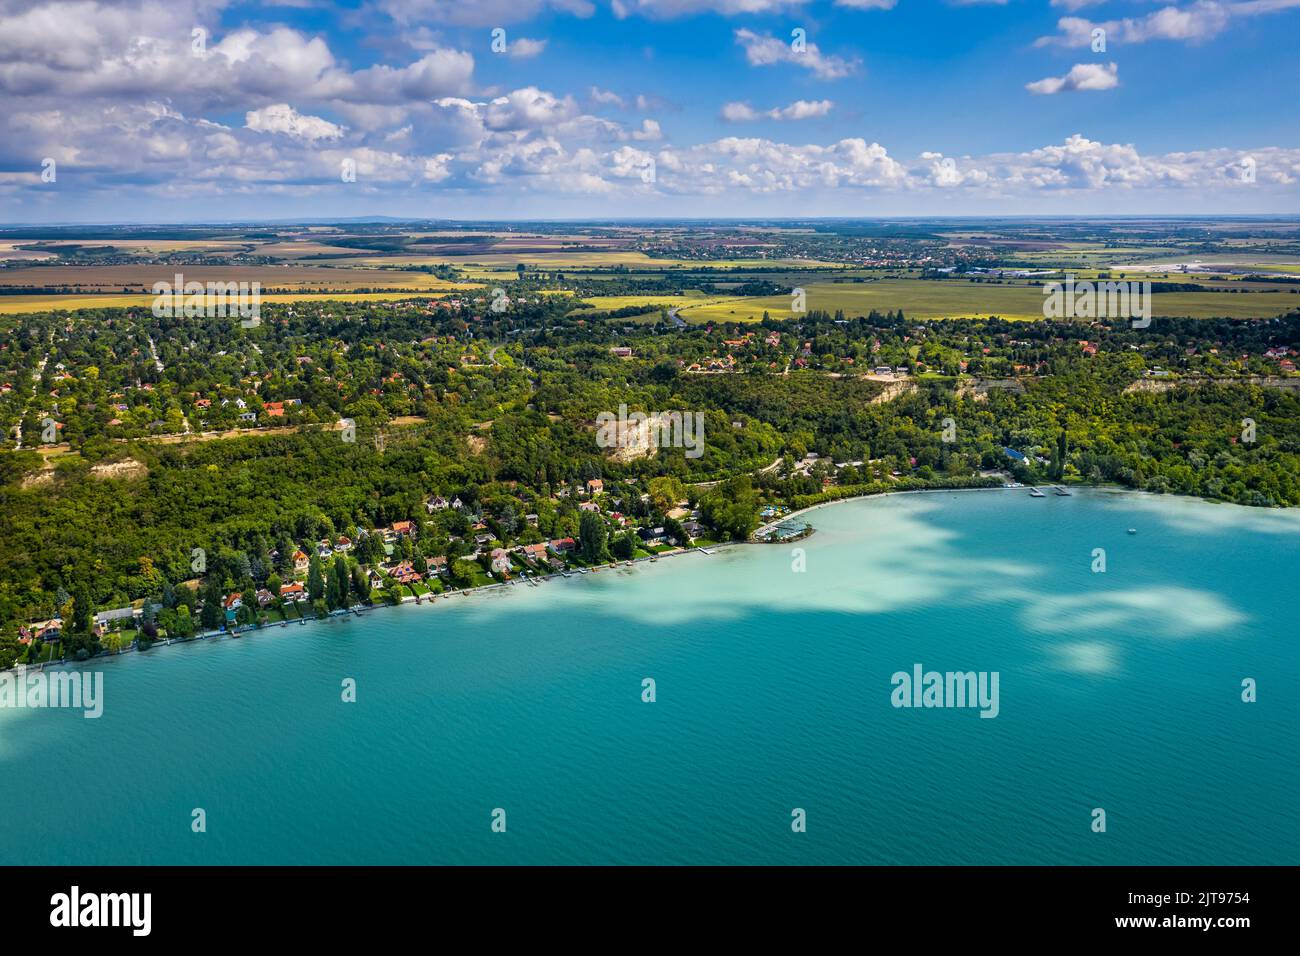 Balatonakarattya, Hungary - Aerial panoramic view of Balatonakarattya on a sunny summer day with turquoise Lake Balaton, blue sky and clouds Stock Photo